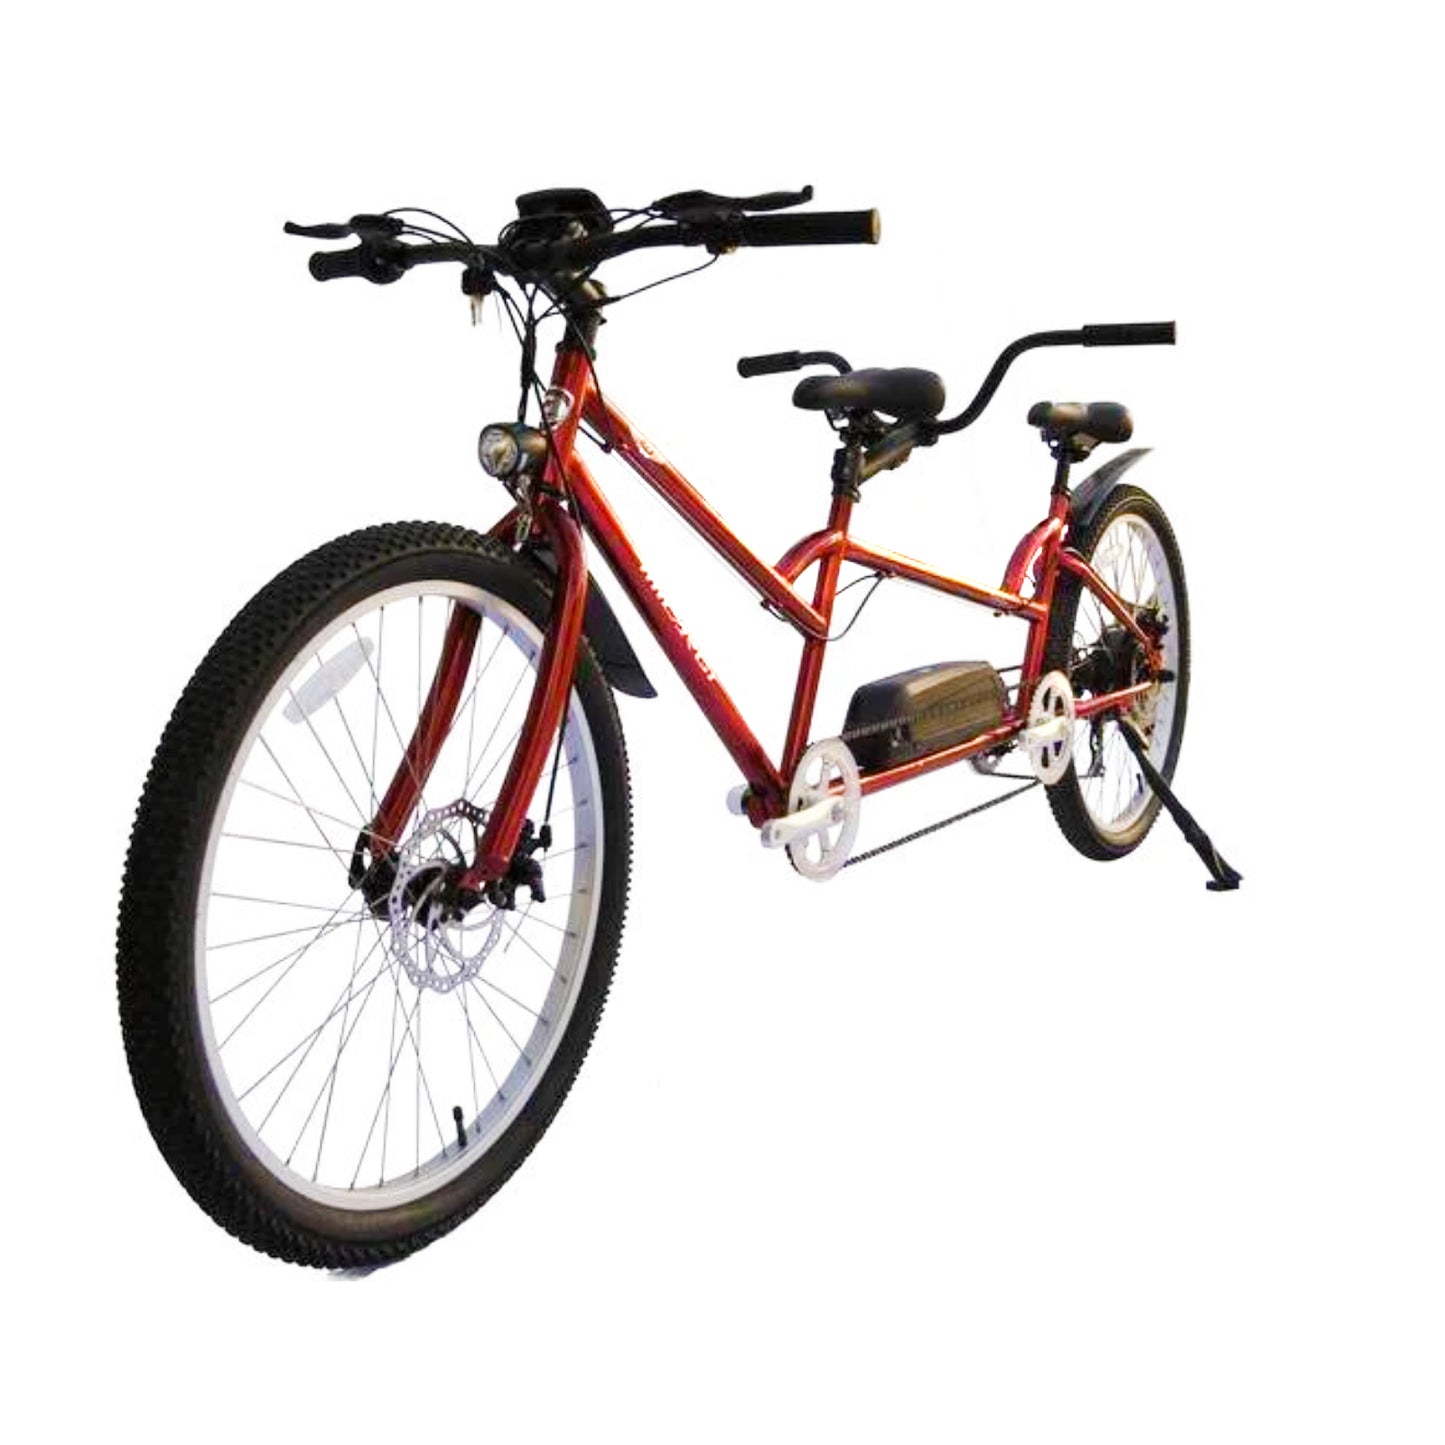 Micargi Raiatea 500W Tandem Electric Bicycle